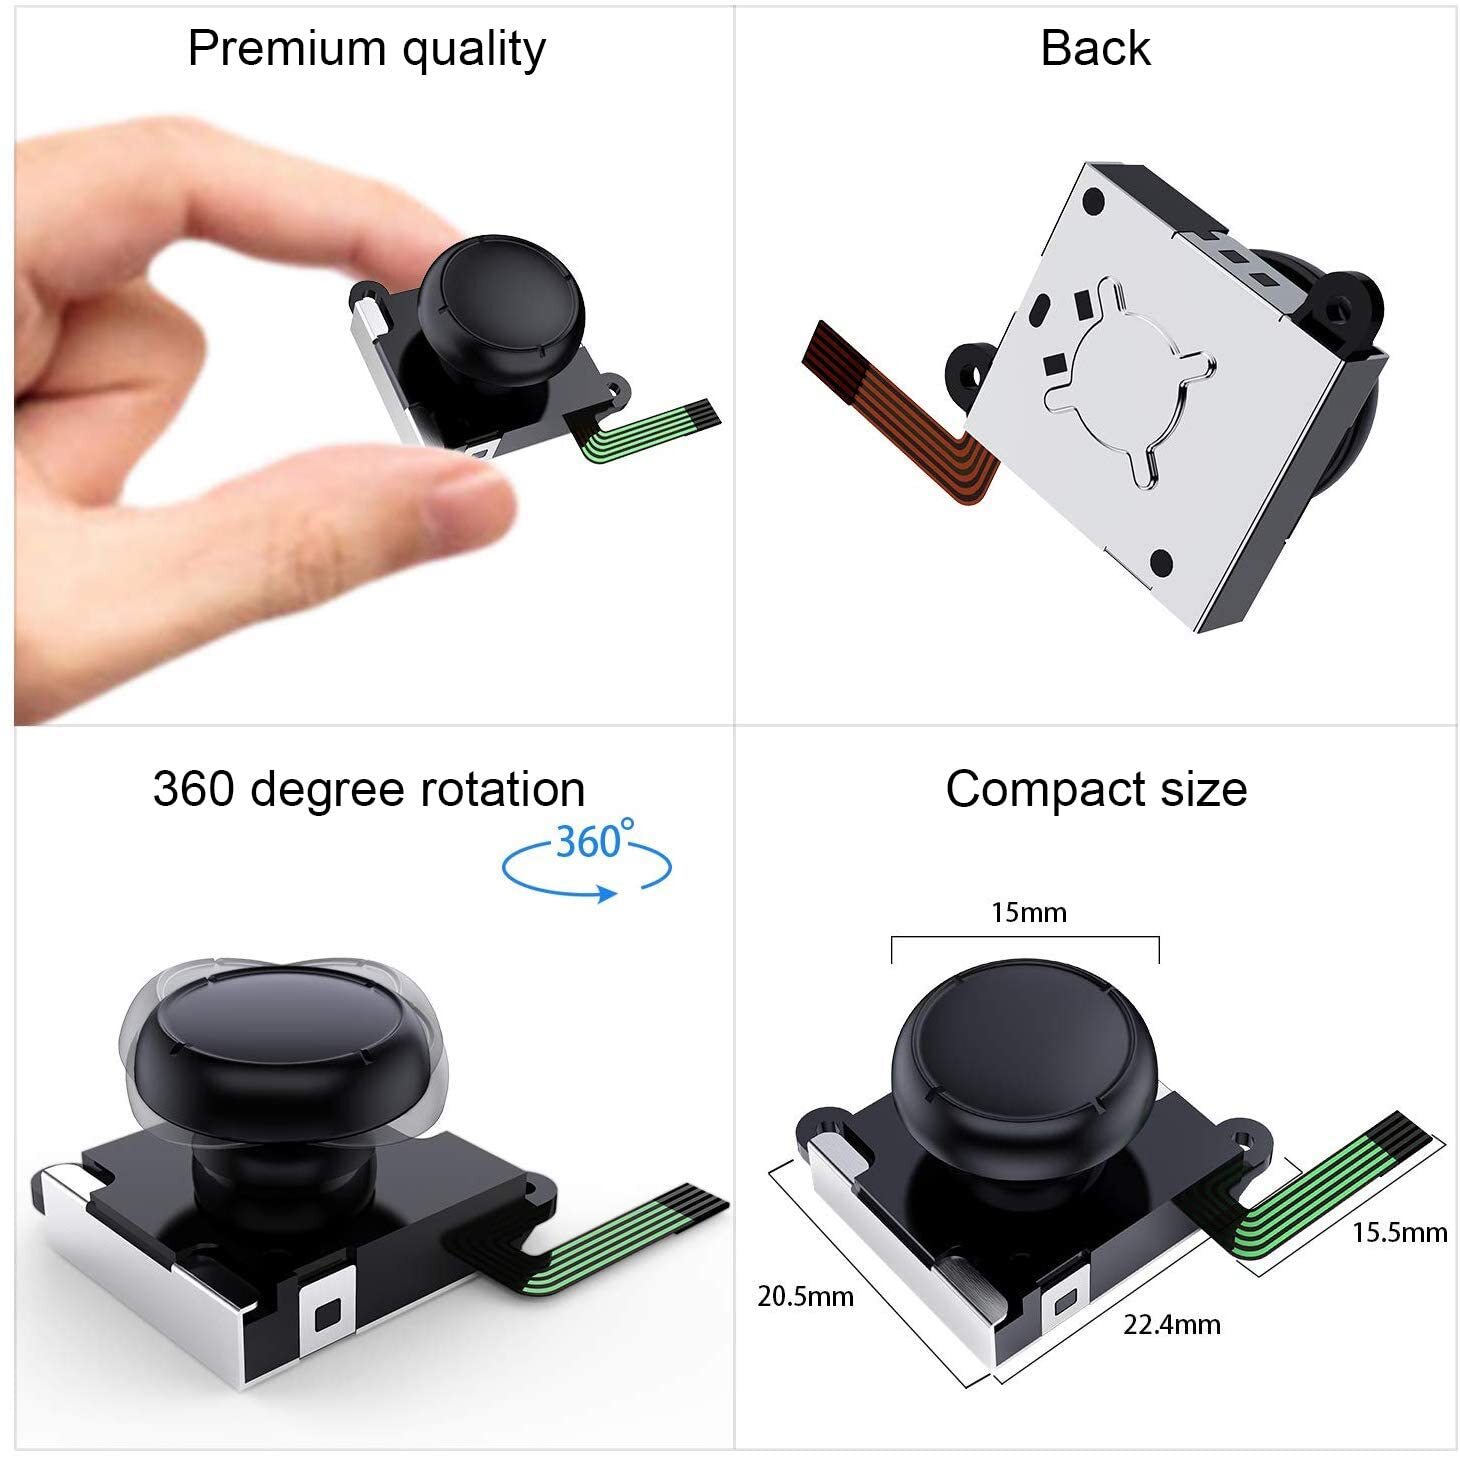 Achetez Pour Nintendo Switch Controller 21 in 1 Joycon Joystick  Remplacement Controller Toal Repair Tool Kit DIY de Chine